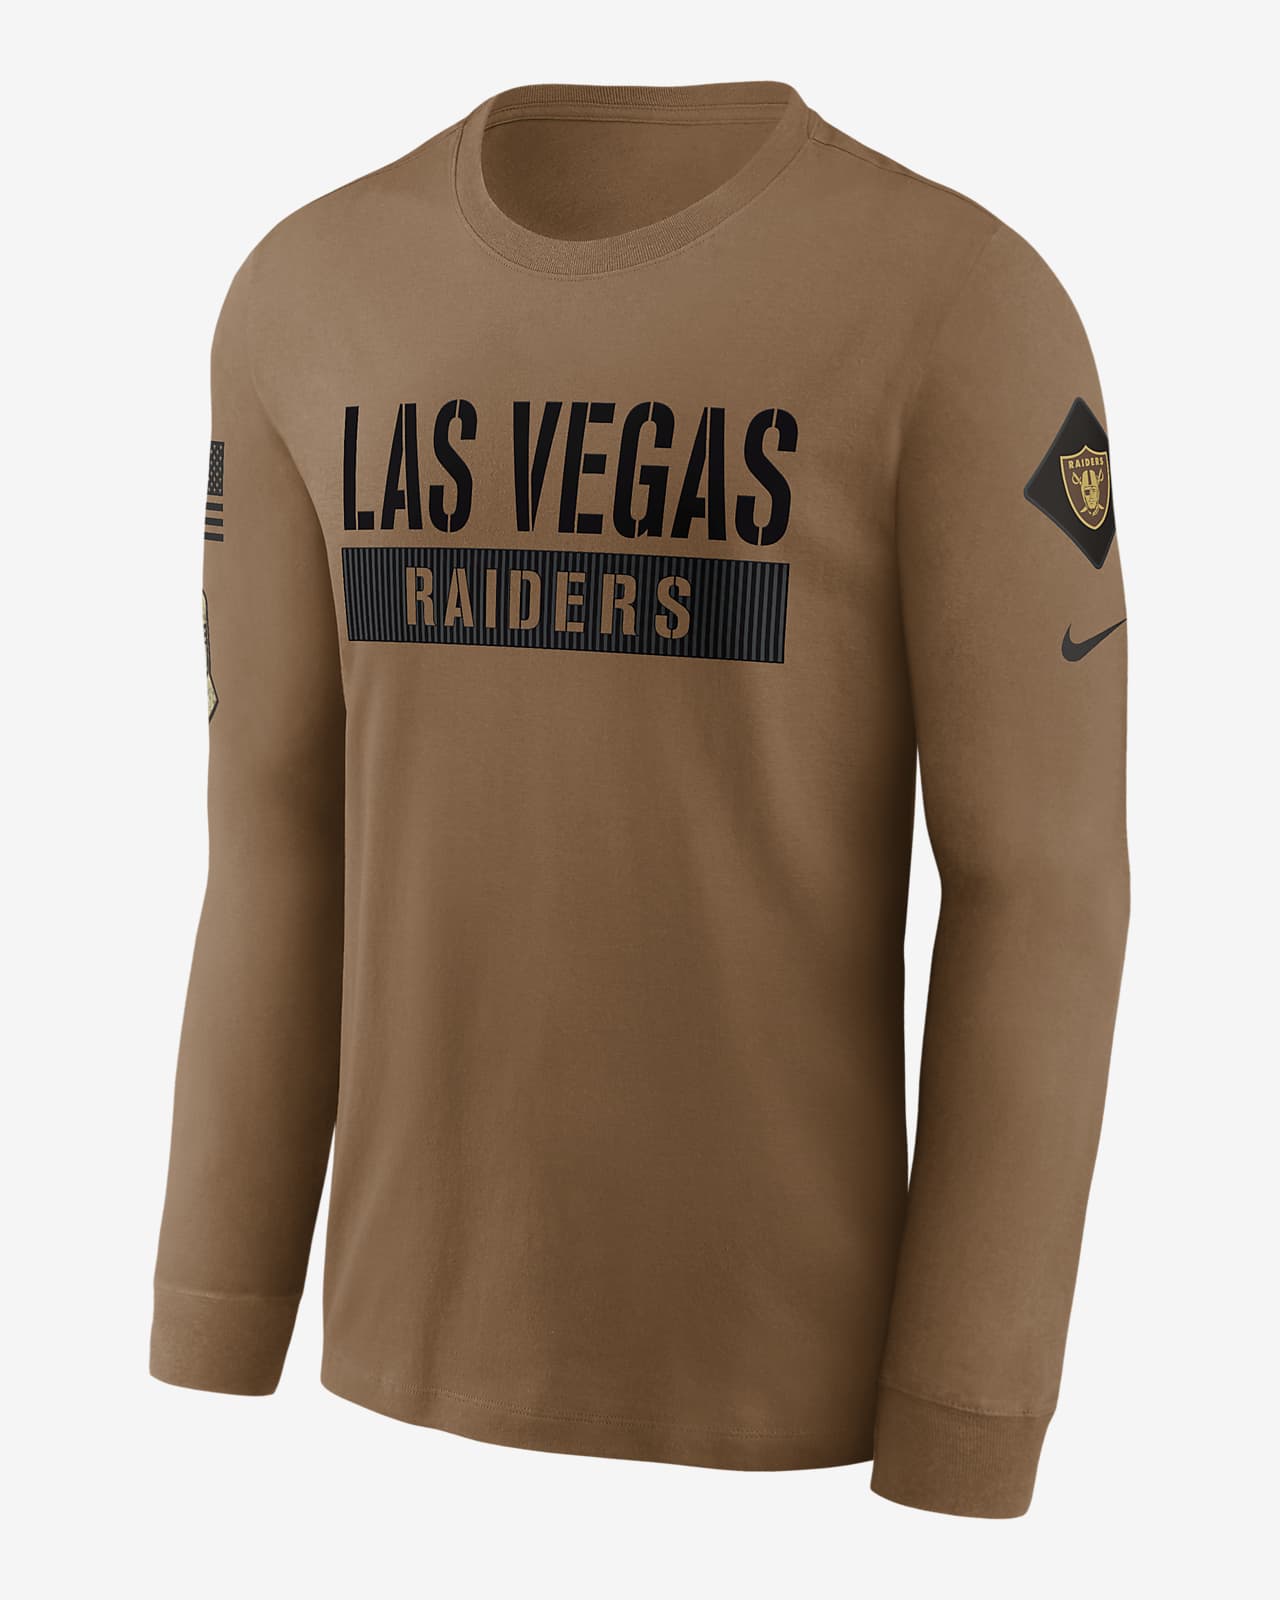 Las Vegas Raiders Logo Essential Men's Nike NFL T-Shirt.